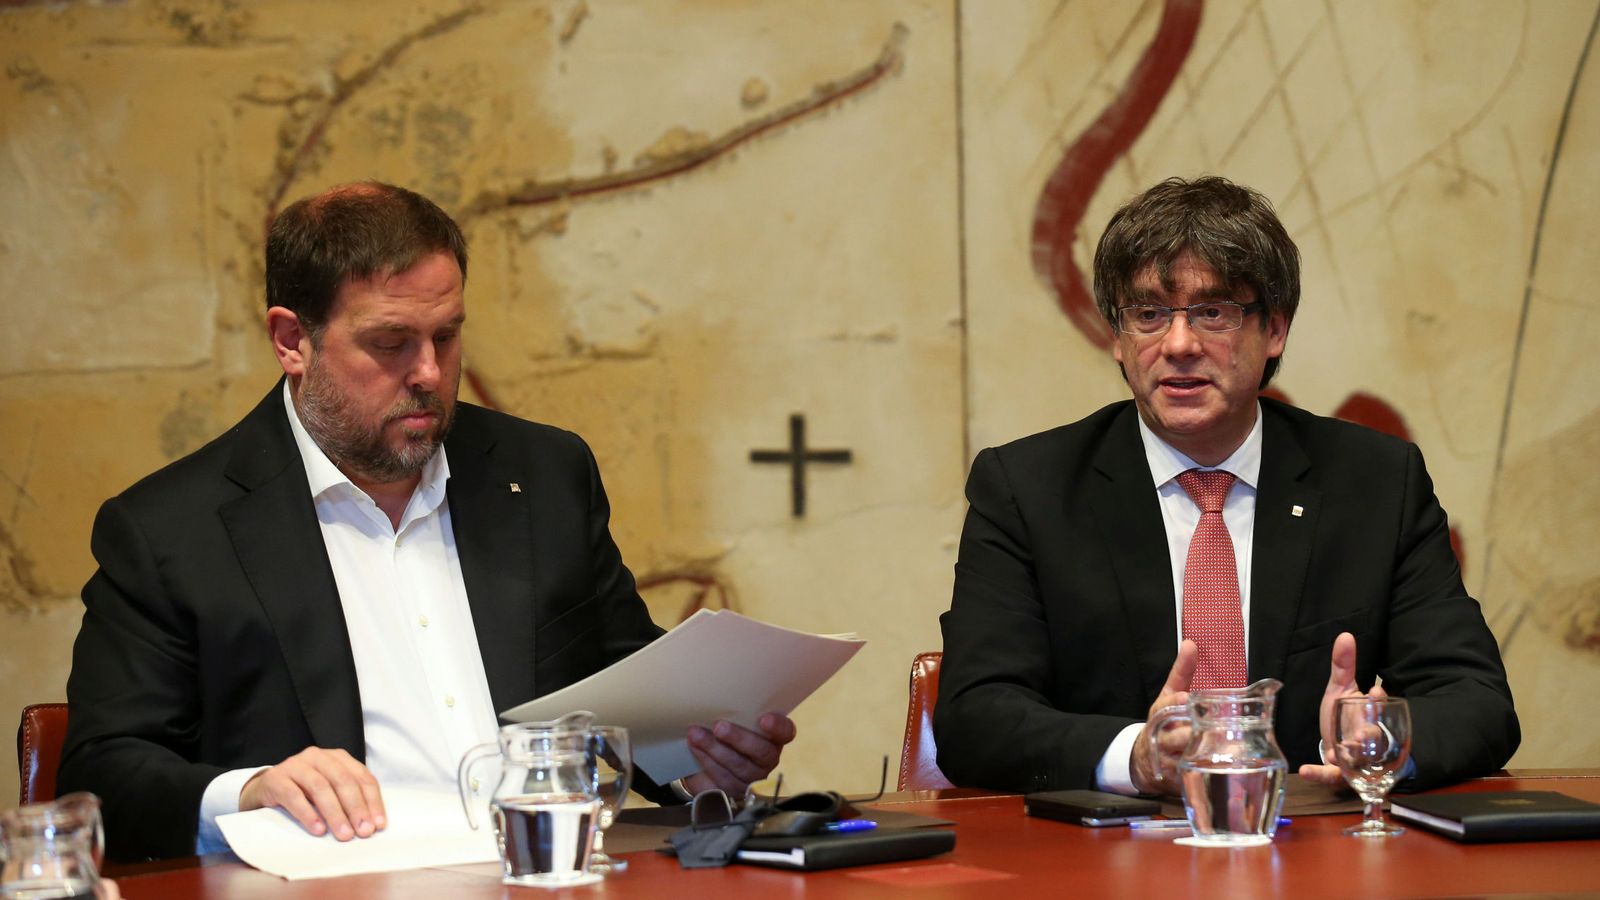 Foto: El presidente de la Generalitat, Carles Puigdemont, junto al vicepresidente catalán, Oriol Junqueras. (Reuters)